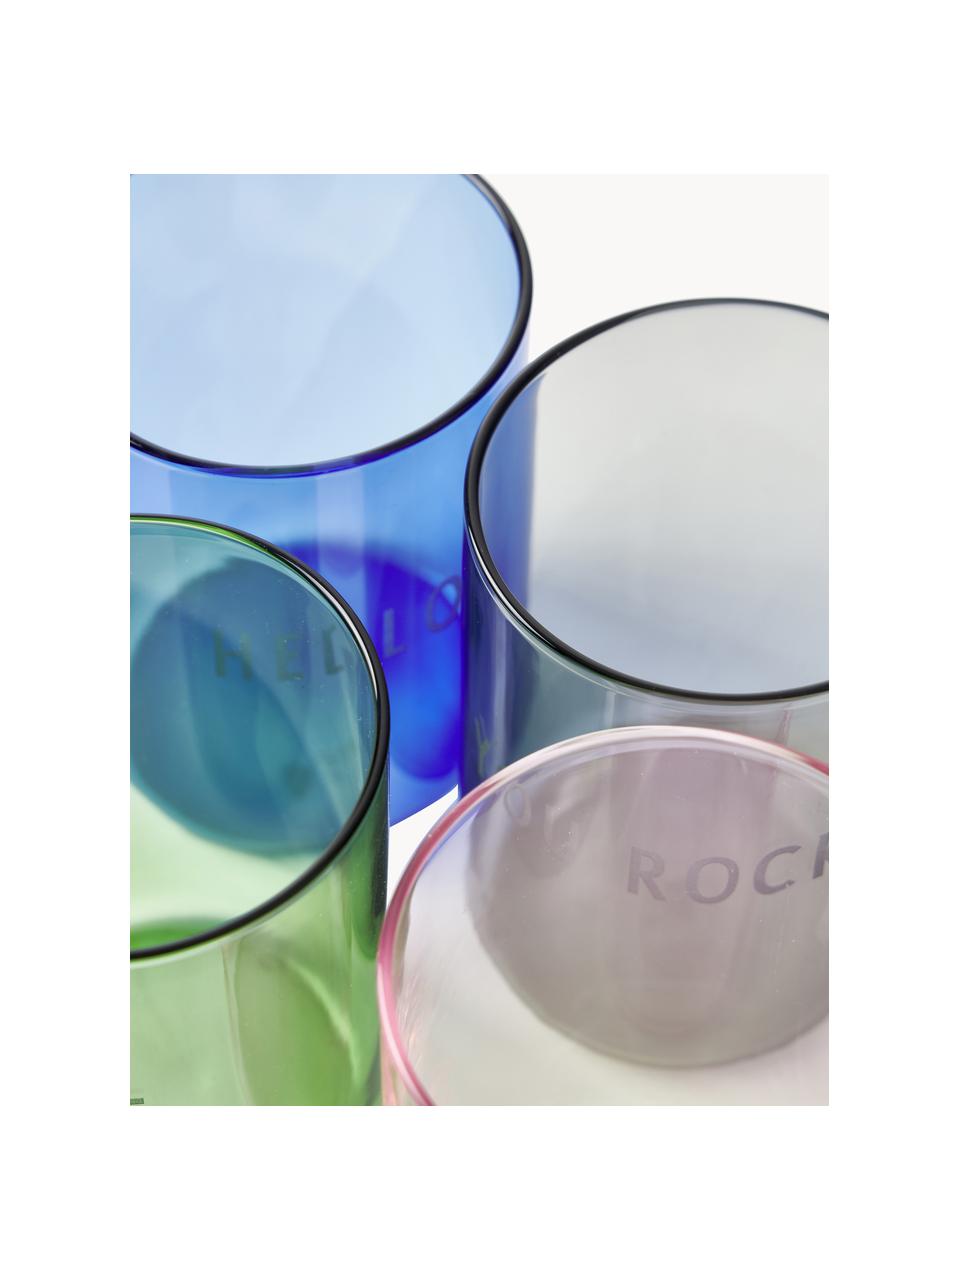 Bicchiere di design con scritta Favorite YOU ROCK, Vetro borosilicato, Nero (You rock), Ø 8 x Alt. 11 cm, 350 ml